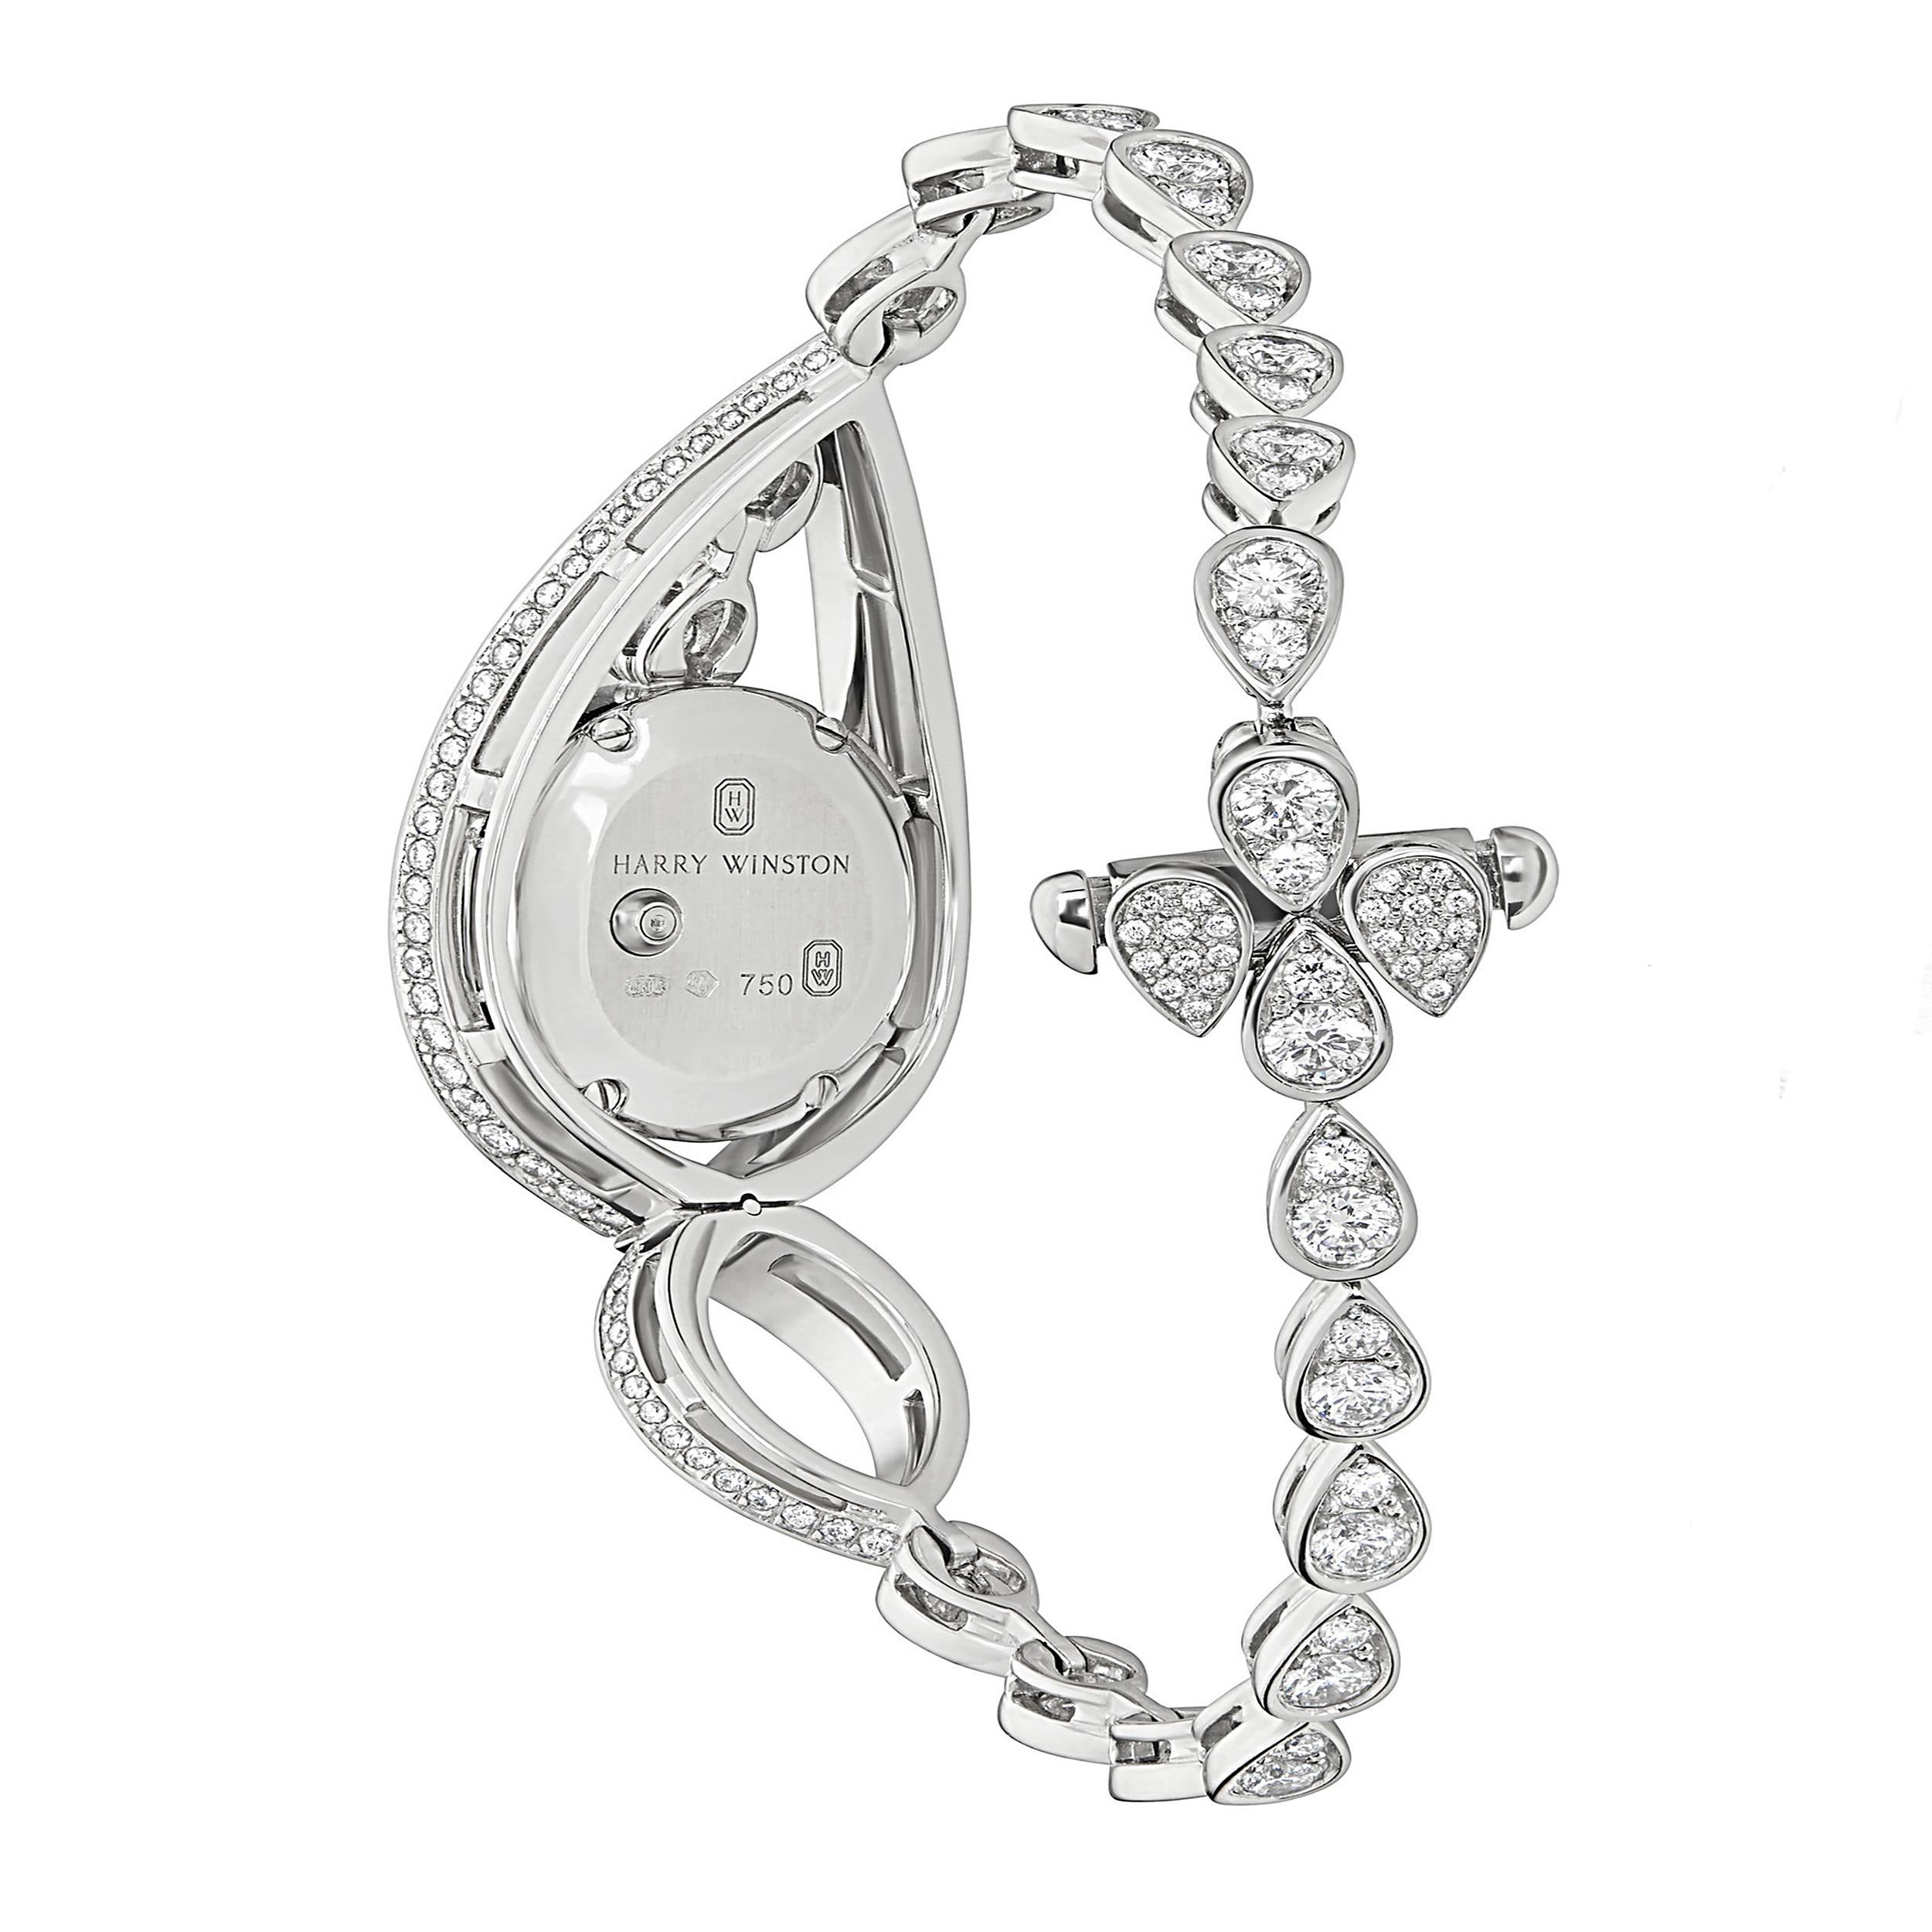 Die Harry Winston Diamond White Gold Watch aus der Loop Collection ist ein luxuriöser und sorgfältig gefertigter Zeitmesser. Das Gehäuse und das Armband der Uhr sind aus 18 Karat Weißgold gefertigt und bieten ein elegantes und strahlendes Finish.